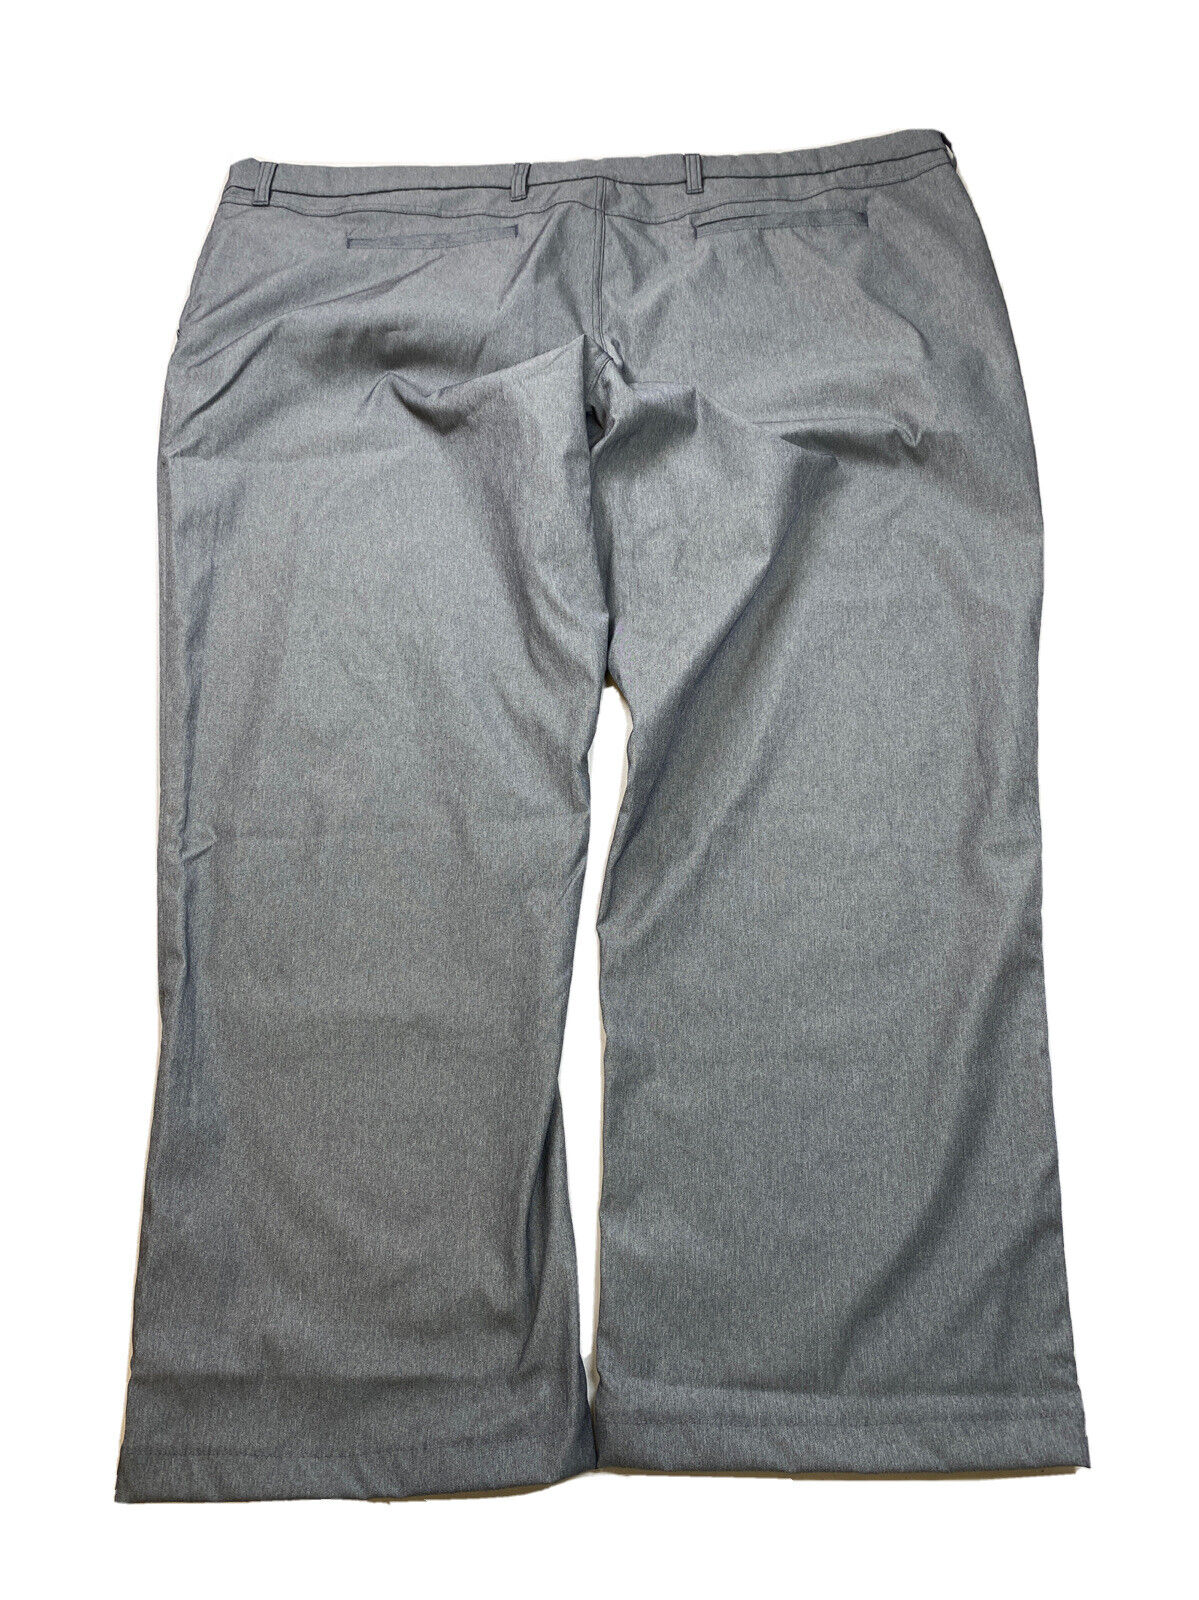 NUEVO Pantalón chino técnico de poliéster gris con cintura elástica para hombre de Lands' End - 54 T